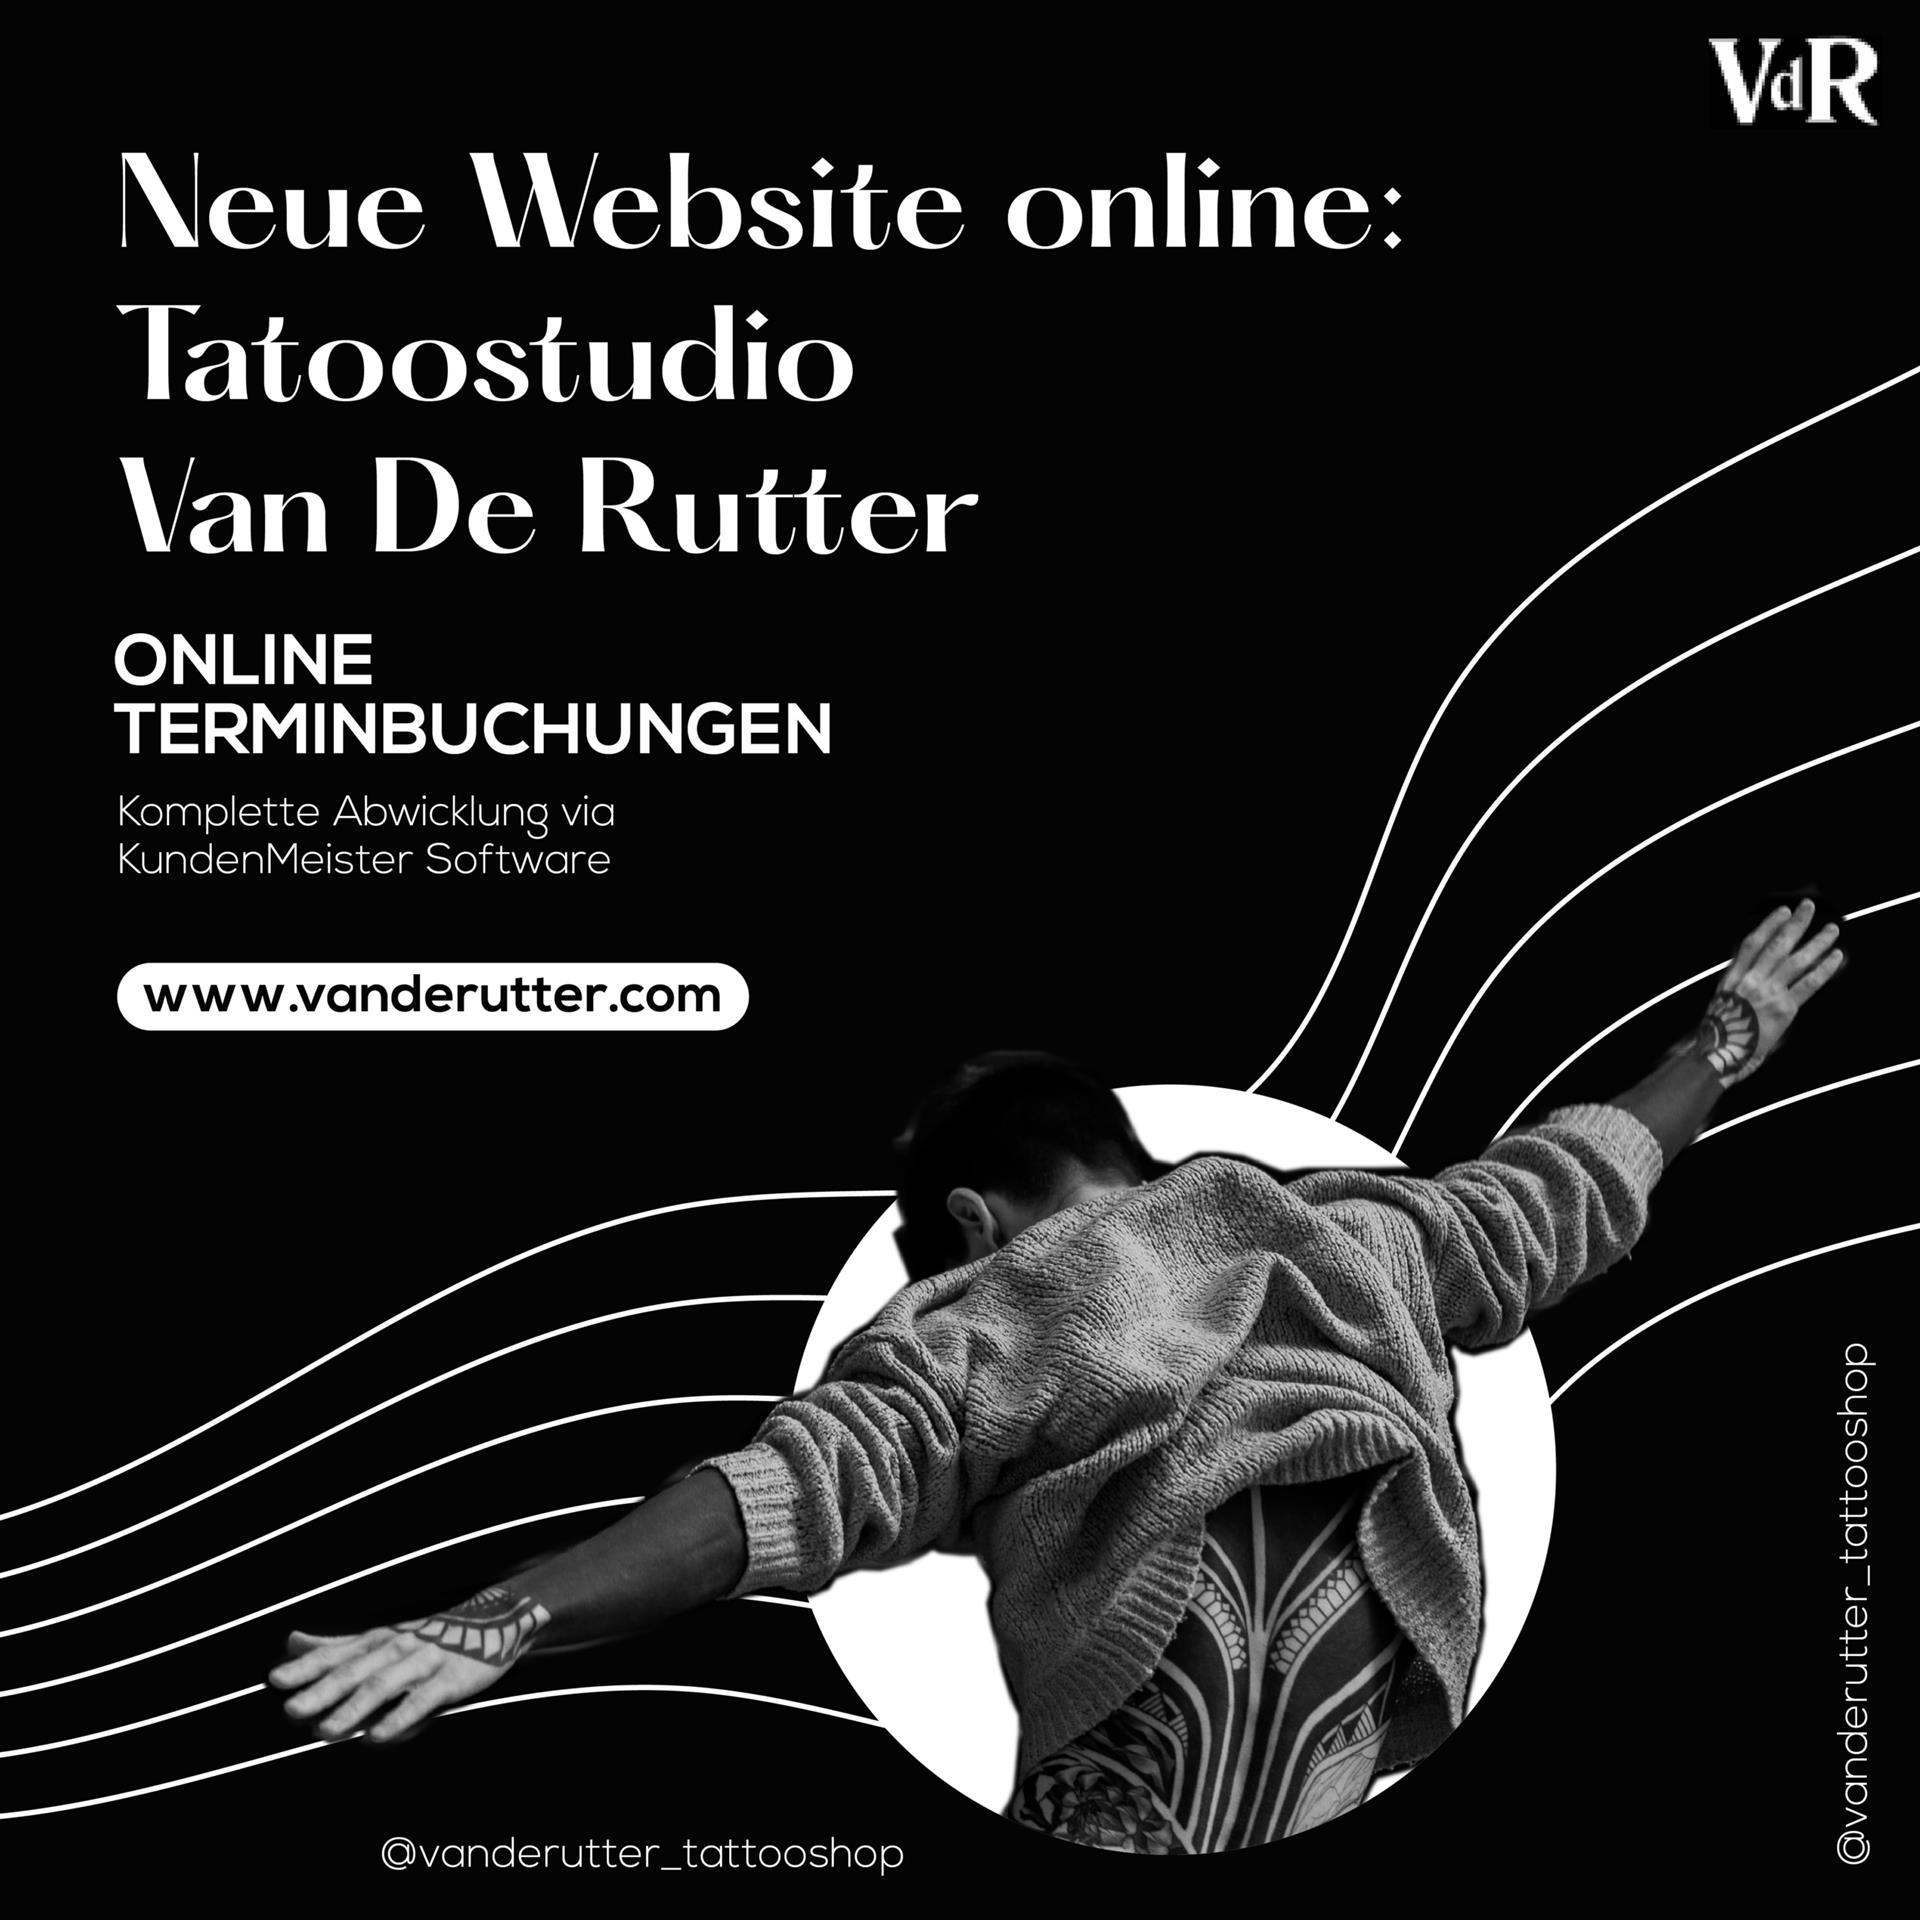 Ny hjemmeside for Van de Rutter